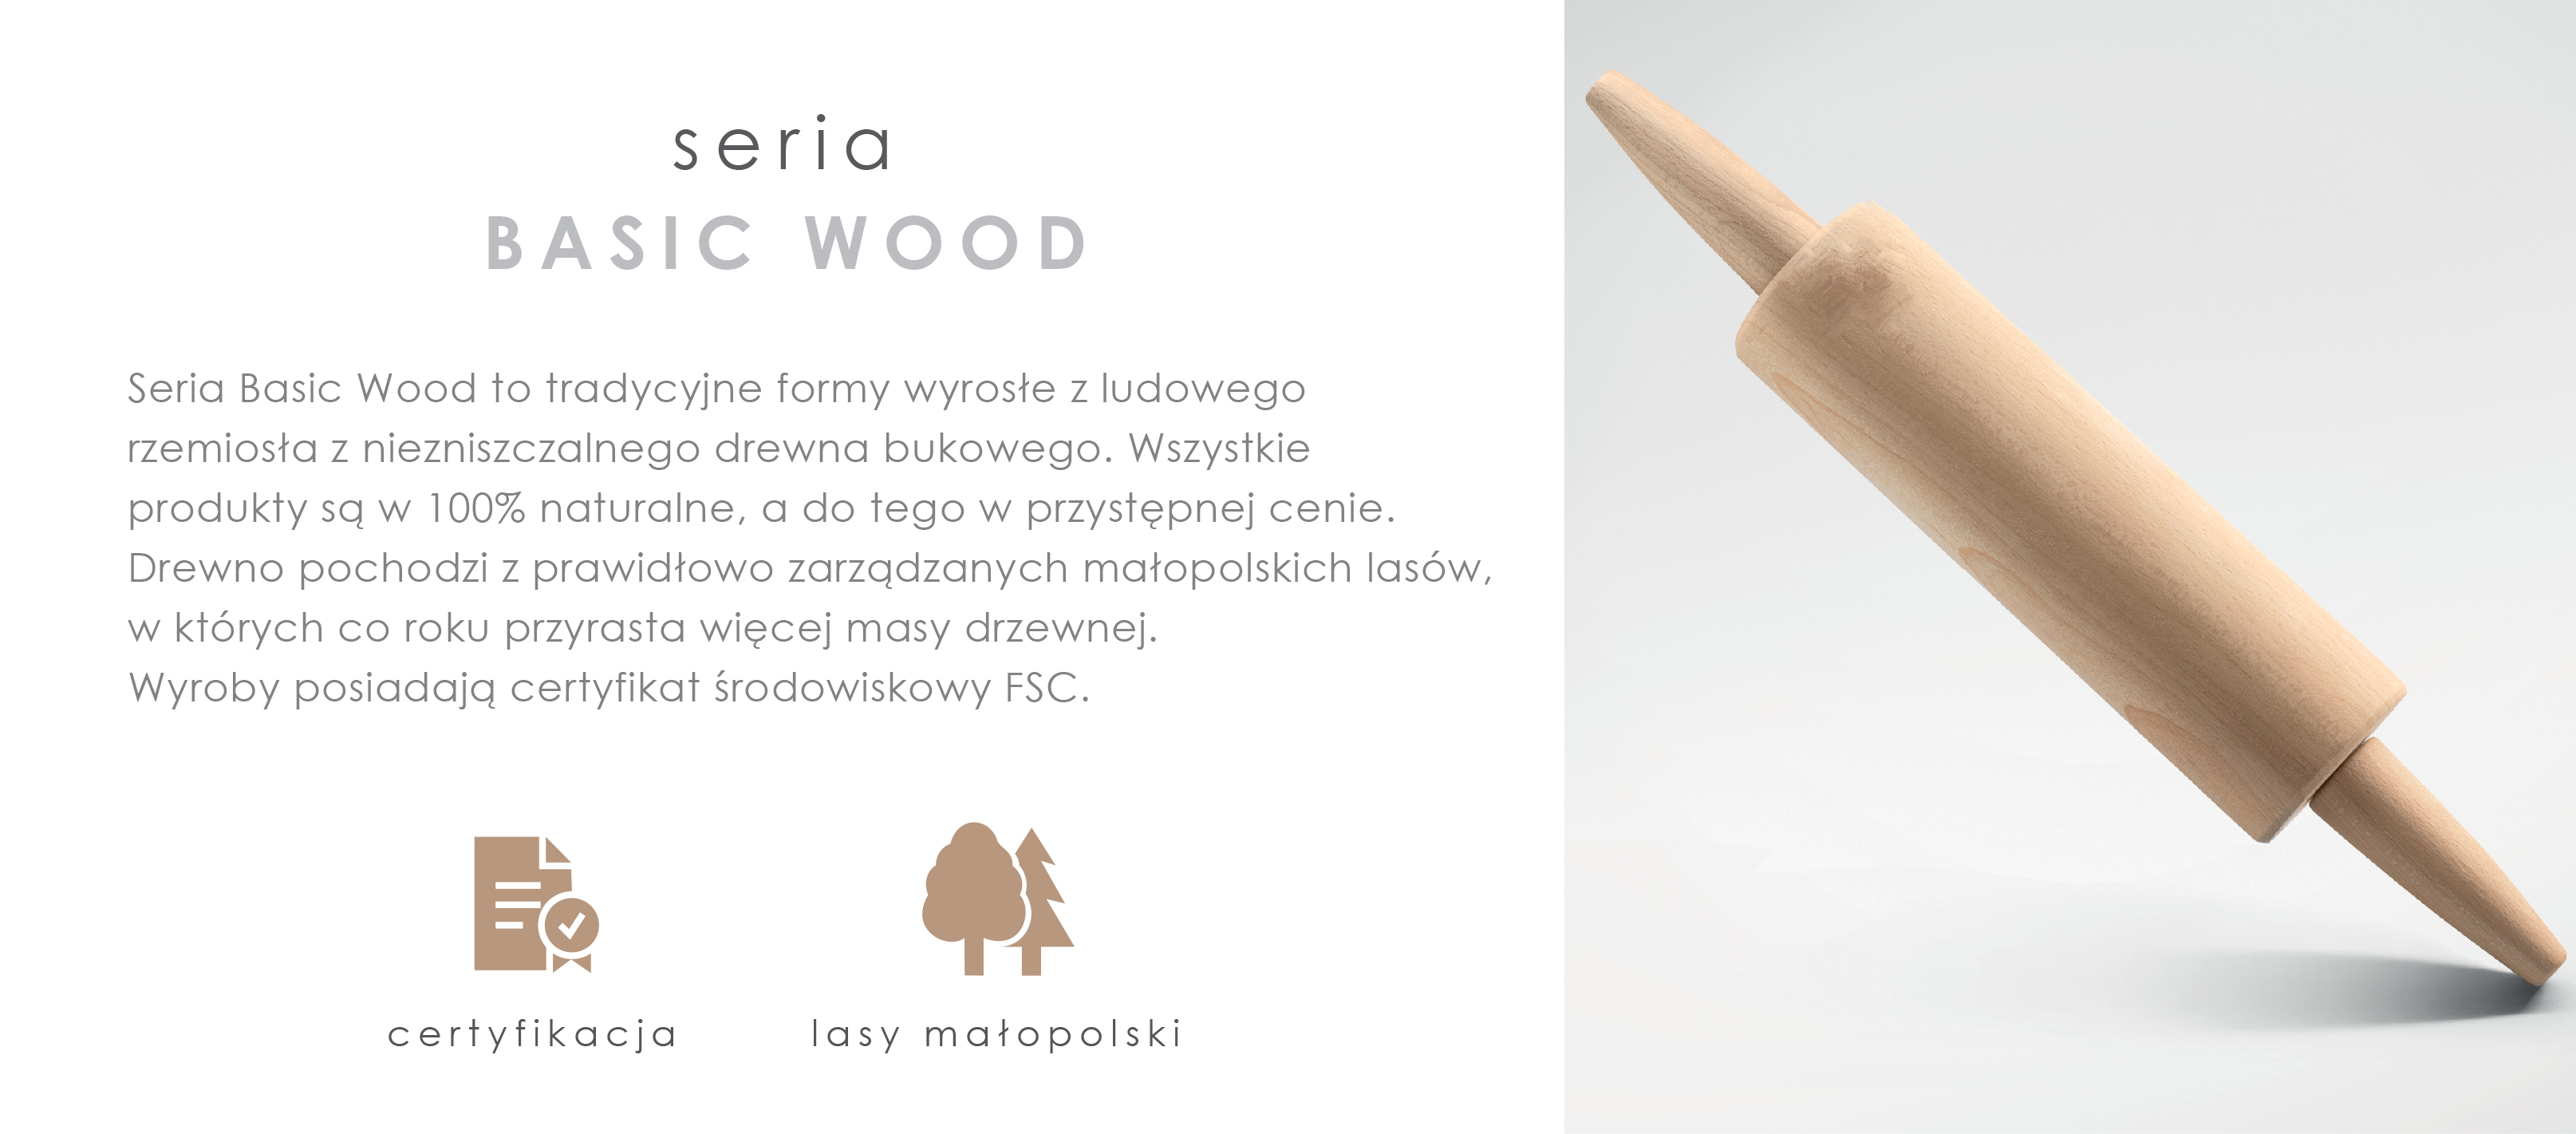 Seria Basic Wood to tradycyjne formy wyrosłe z ludowego rzemiosła z niezniszczalnego drewna bukowego. Wszystkie produkty są w 100% naturalne a do tego w przystępnej cenie. Drewno pochodzi z prawidłowo zarządzanych małopolskich lasów, w których co roku przyrasta więcej masy drzewnej. Wyroby posiadają certyfikat środowiskowy FSC.